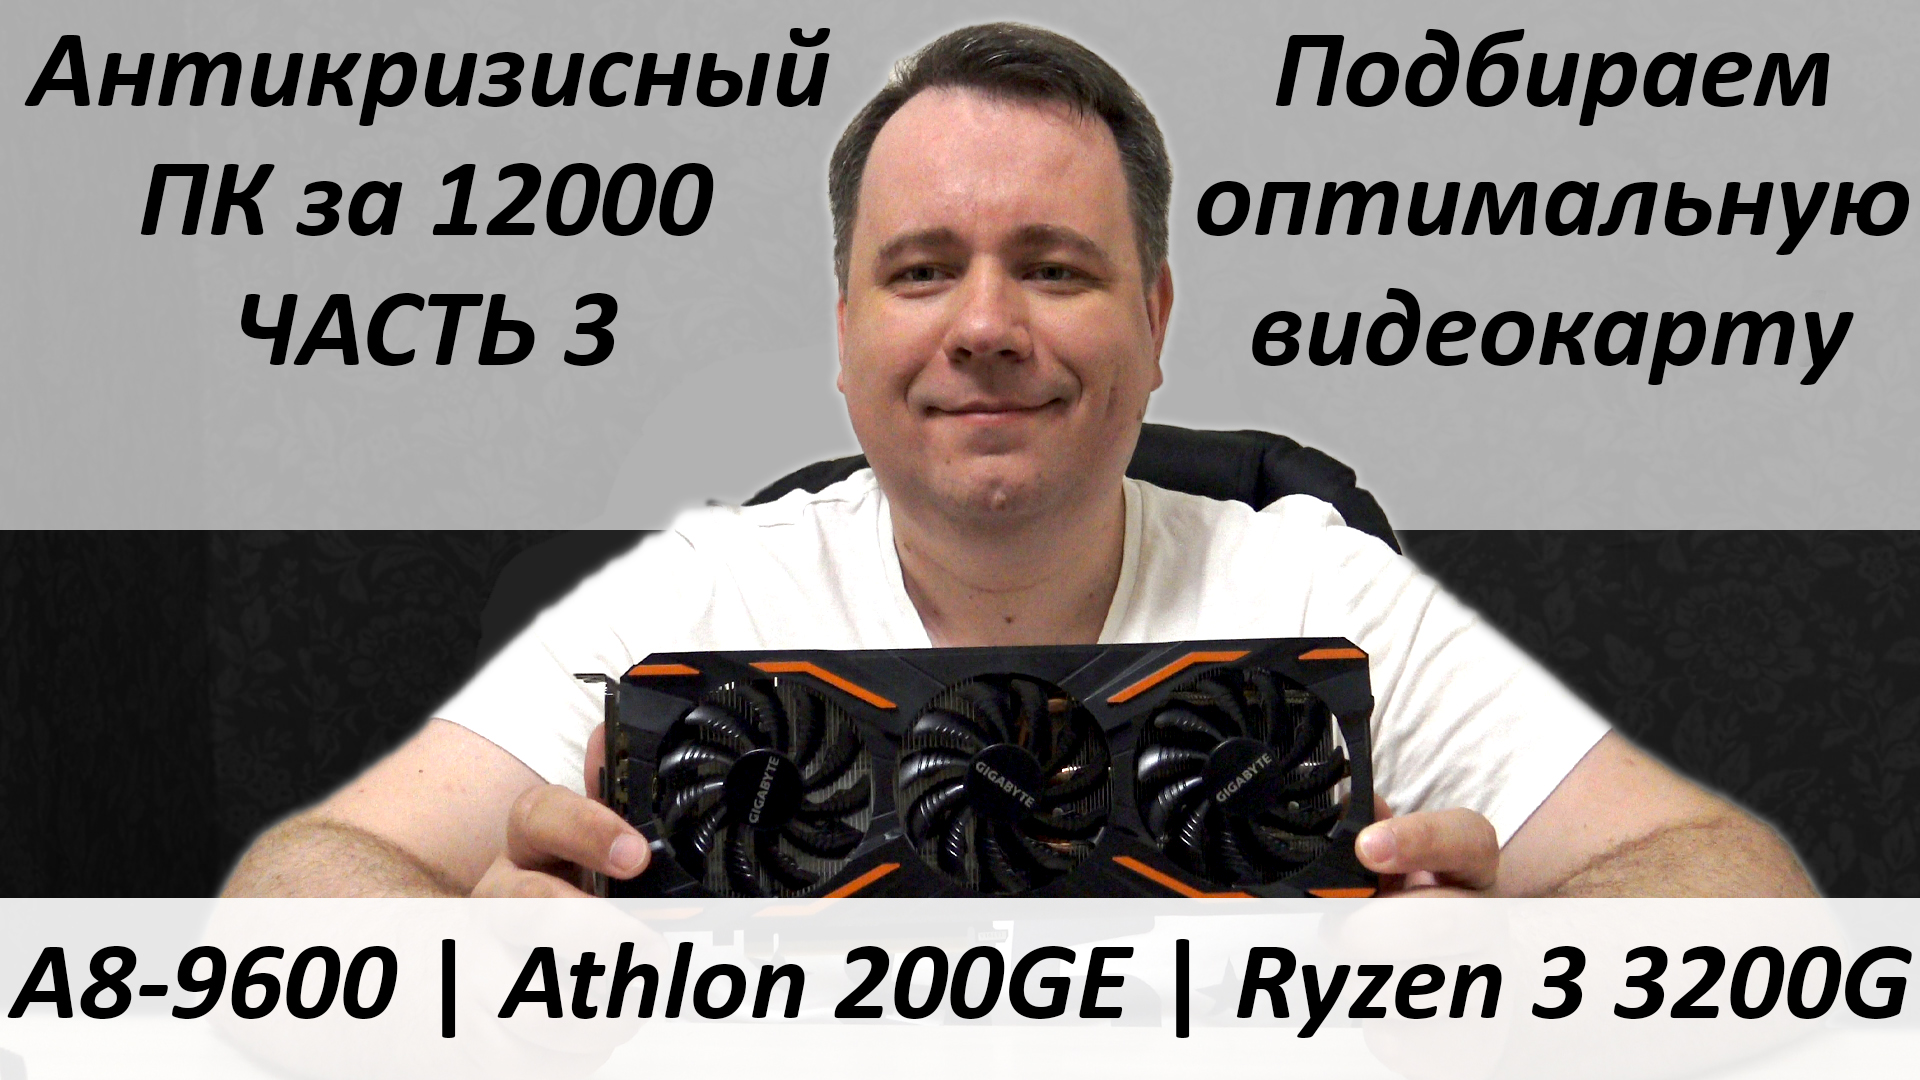 Athlon 200 ge gta 5 фото 31